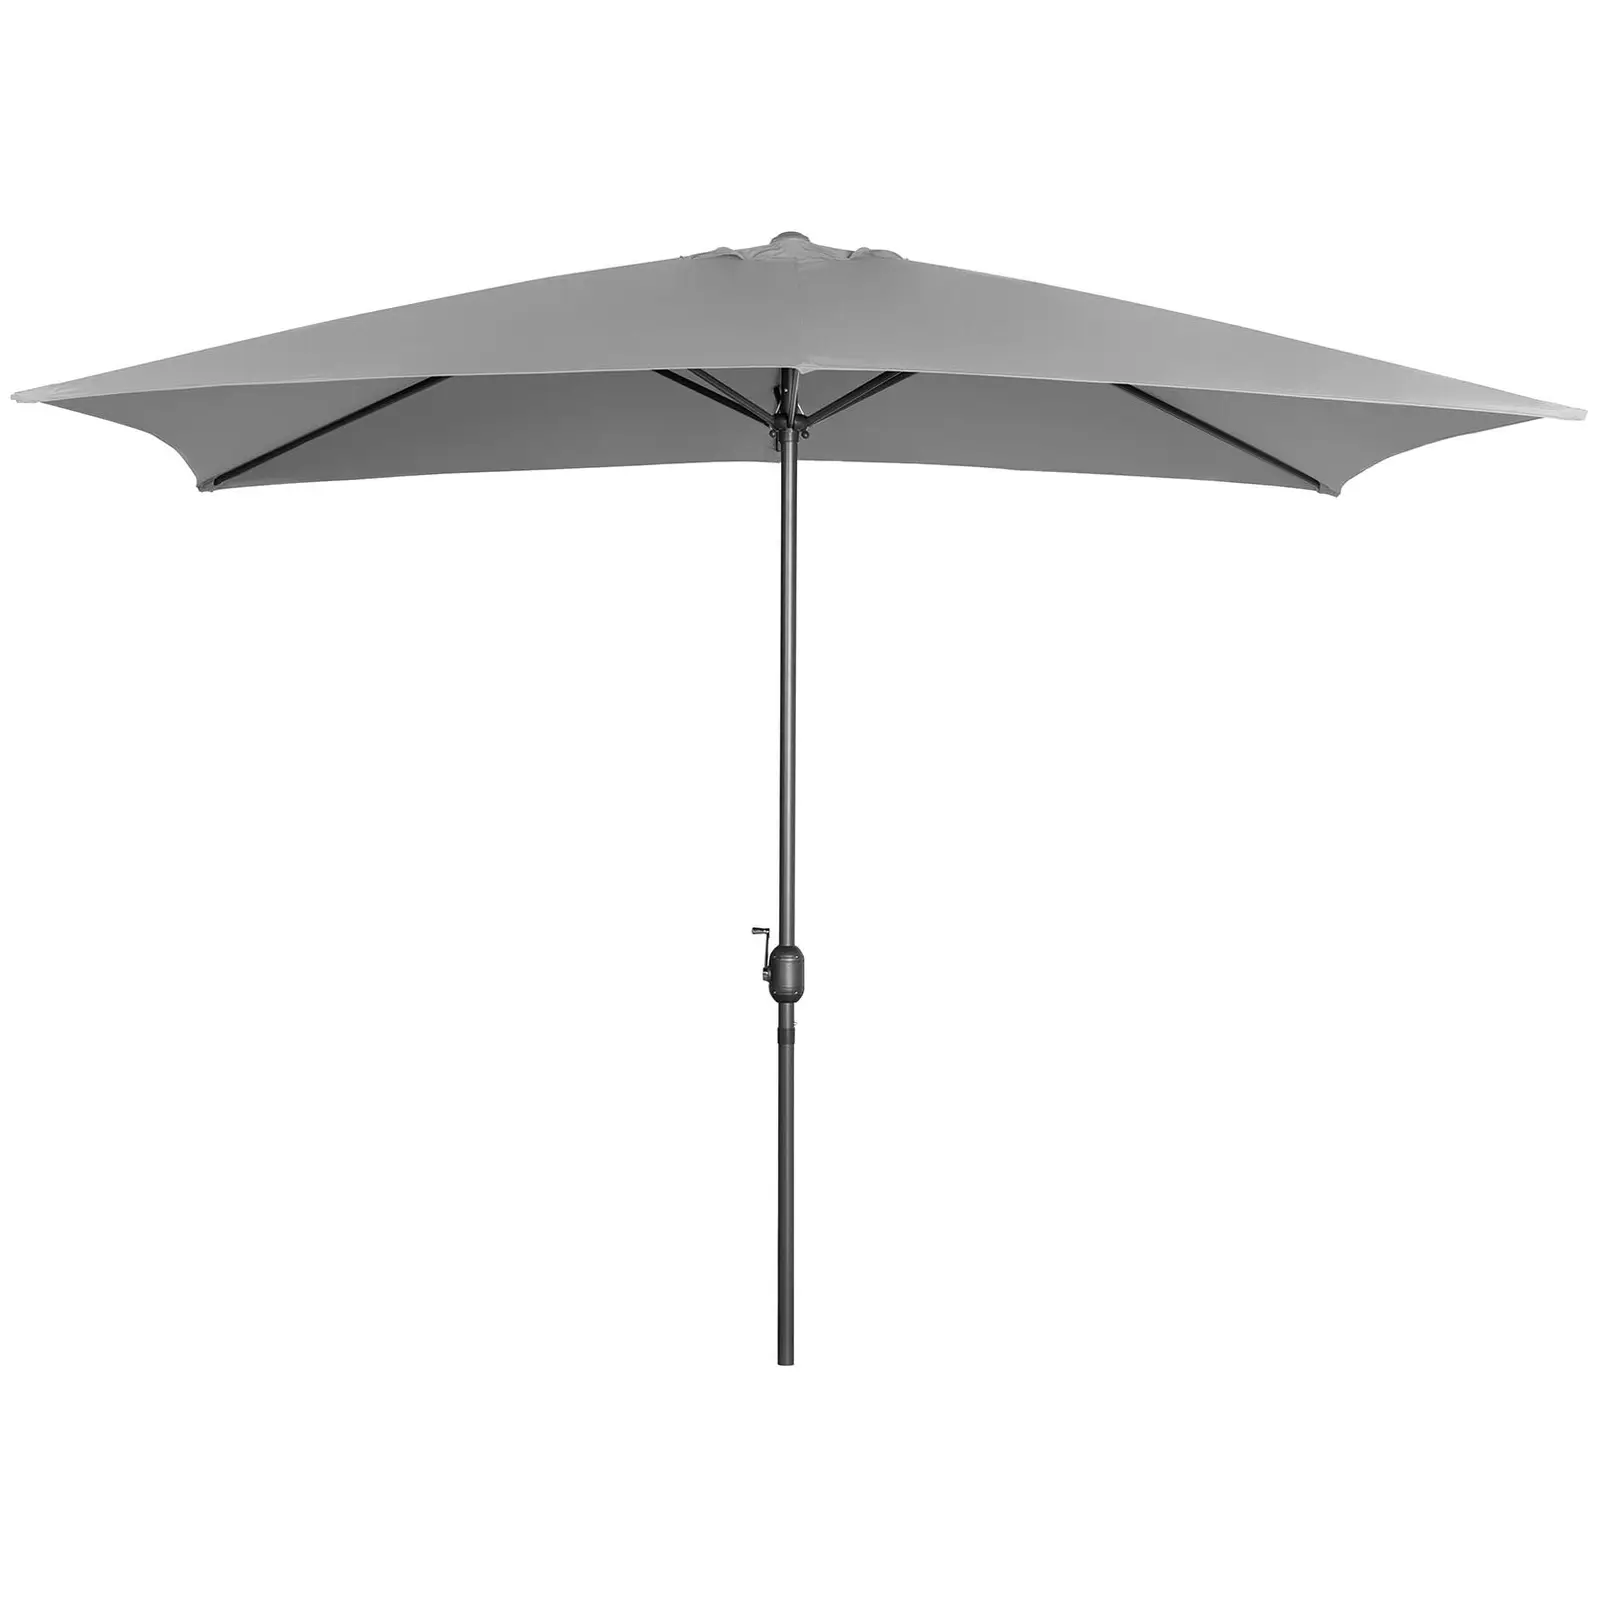 Occasion Grand parasol - Gris foncé - Rectangulaire - 200 x 300 cm